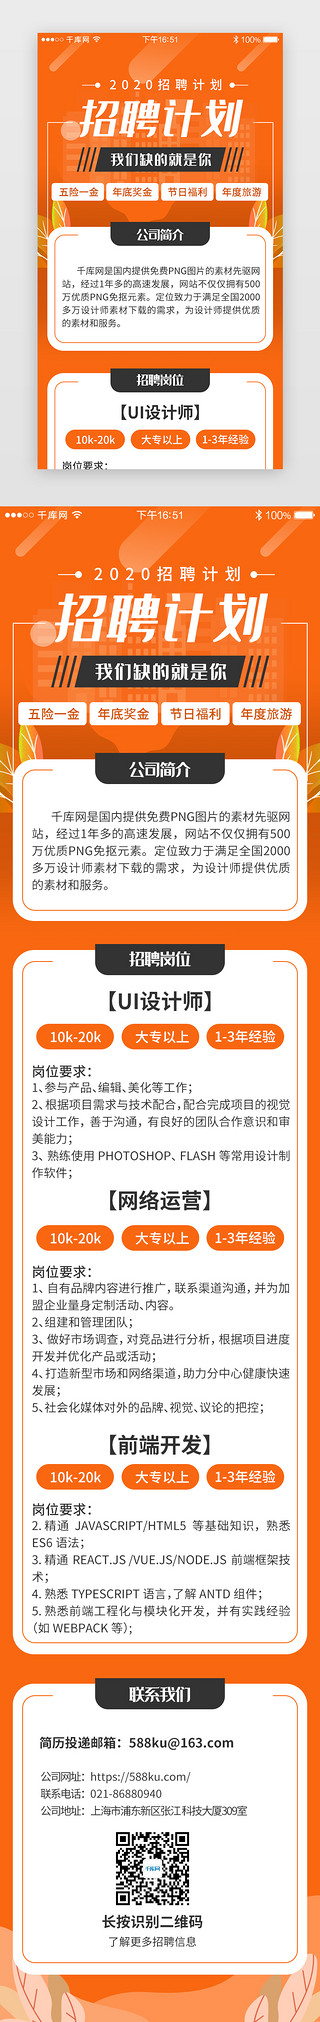 招聘拼图UI设计素材_橙色系app招聘求职H5